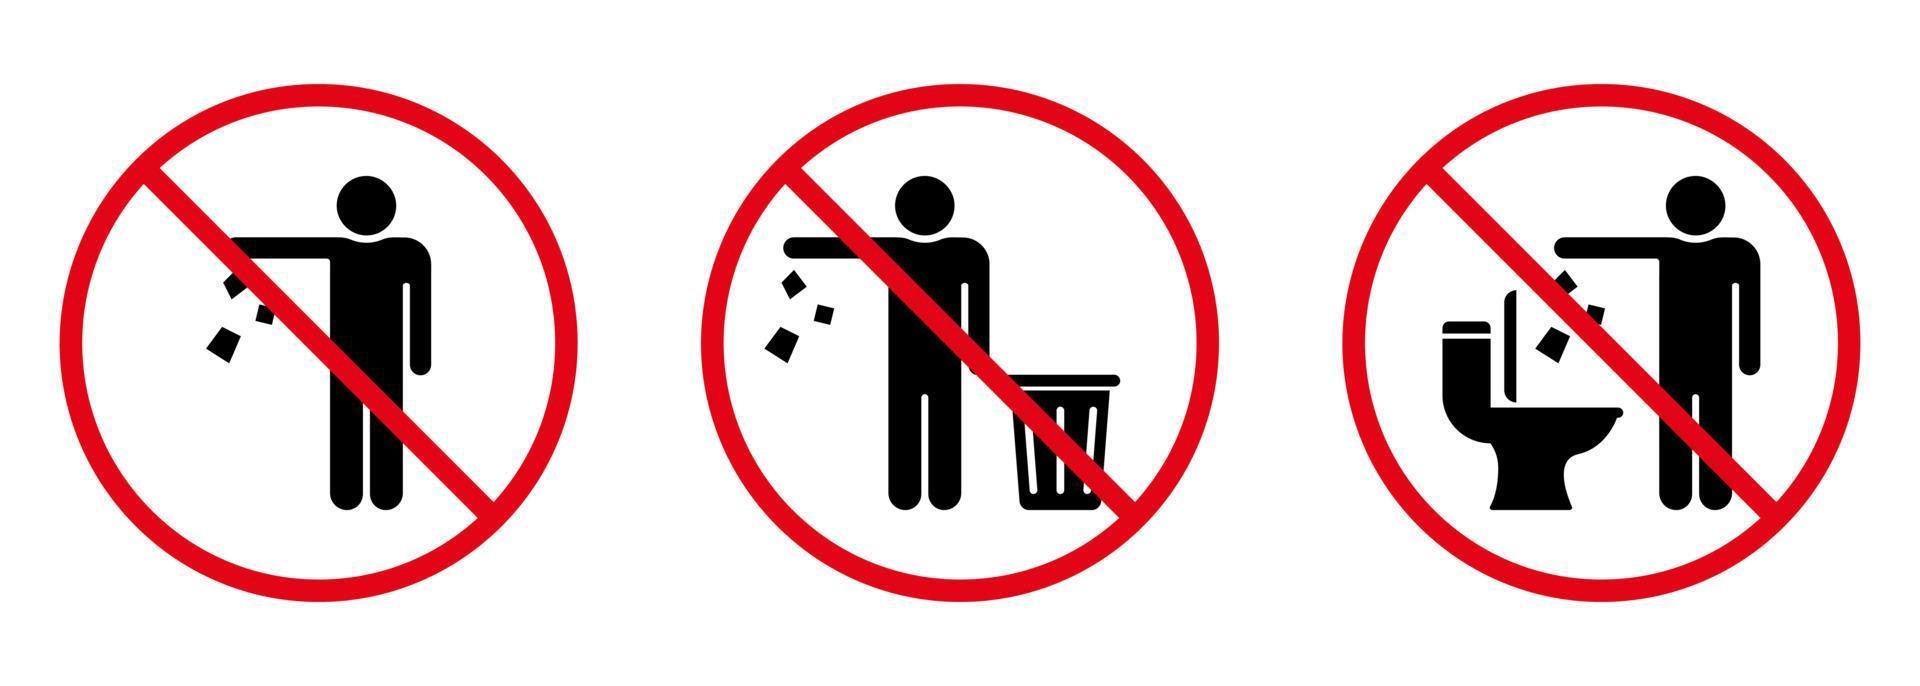 non gettare spazzatura nell'icona della siluetta del segno della toilette. vietato gettare spazzatura, rifiuti, simbolo di immondizia. avviso si prega di gettare i rifiuti nell'icona del cestino. mantieni il pittogramma del glifo pulito. illustrazione vettoriale isolata.